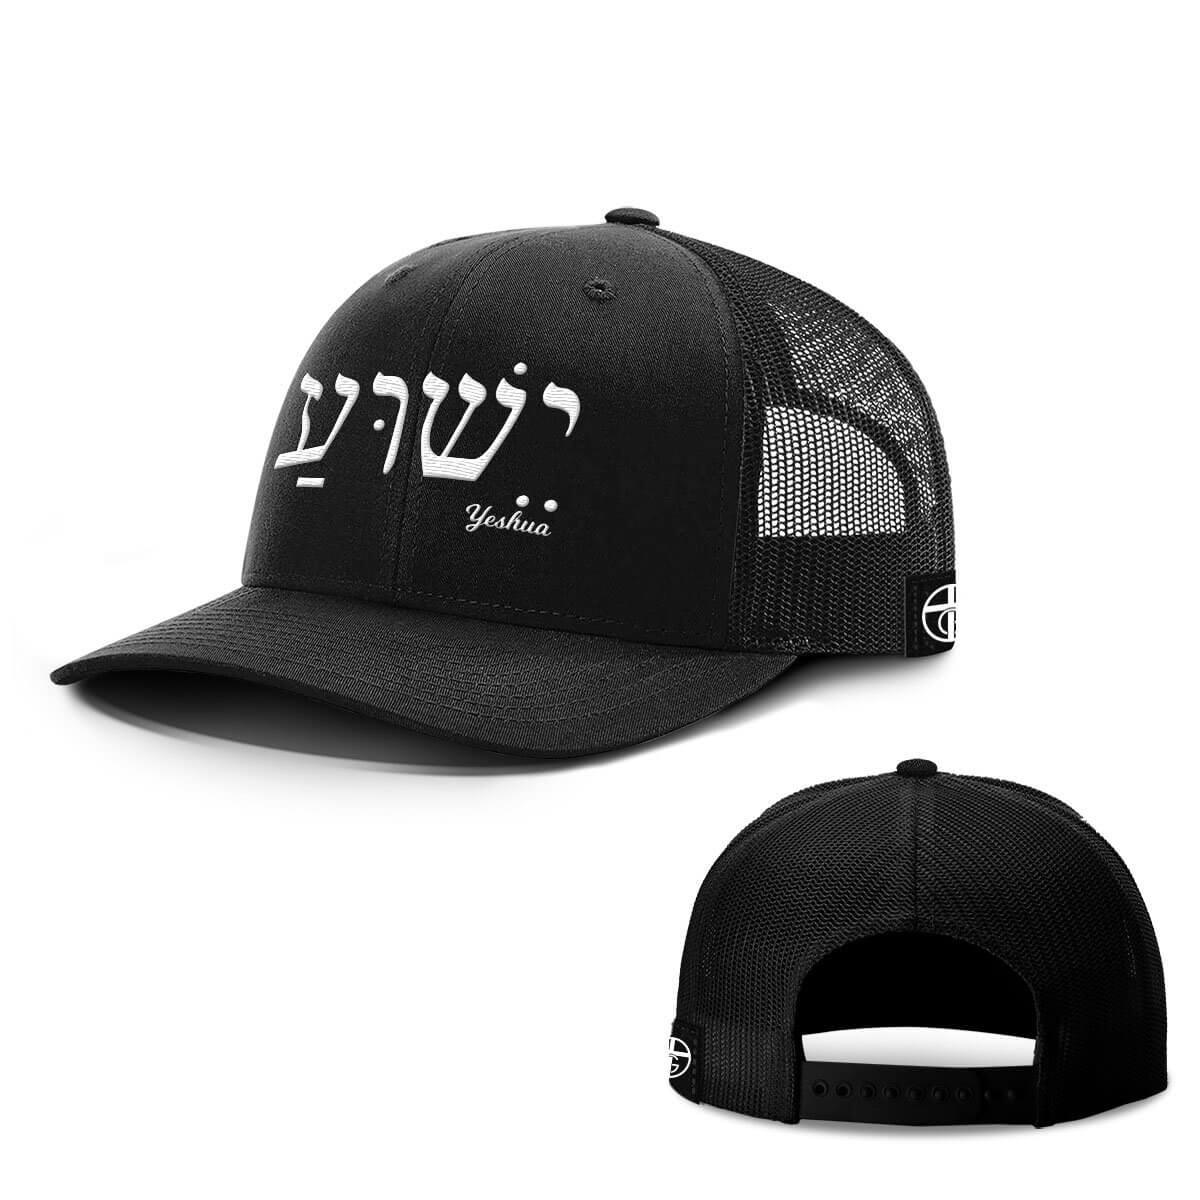 Yeshua Hats